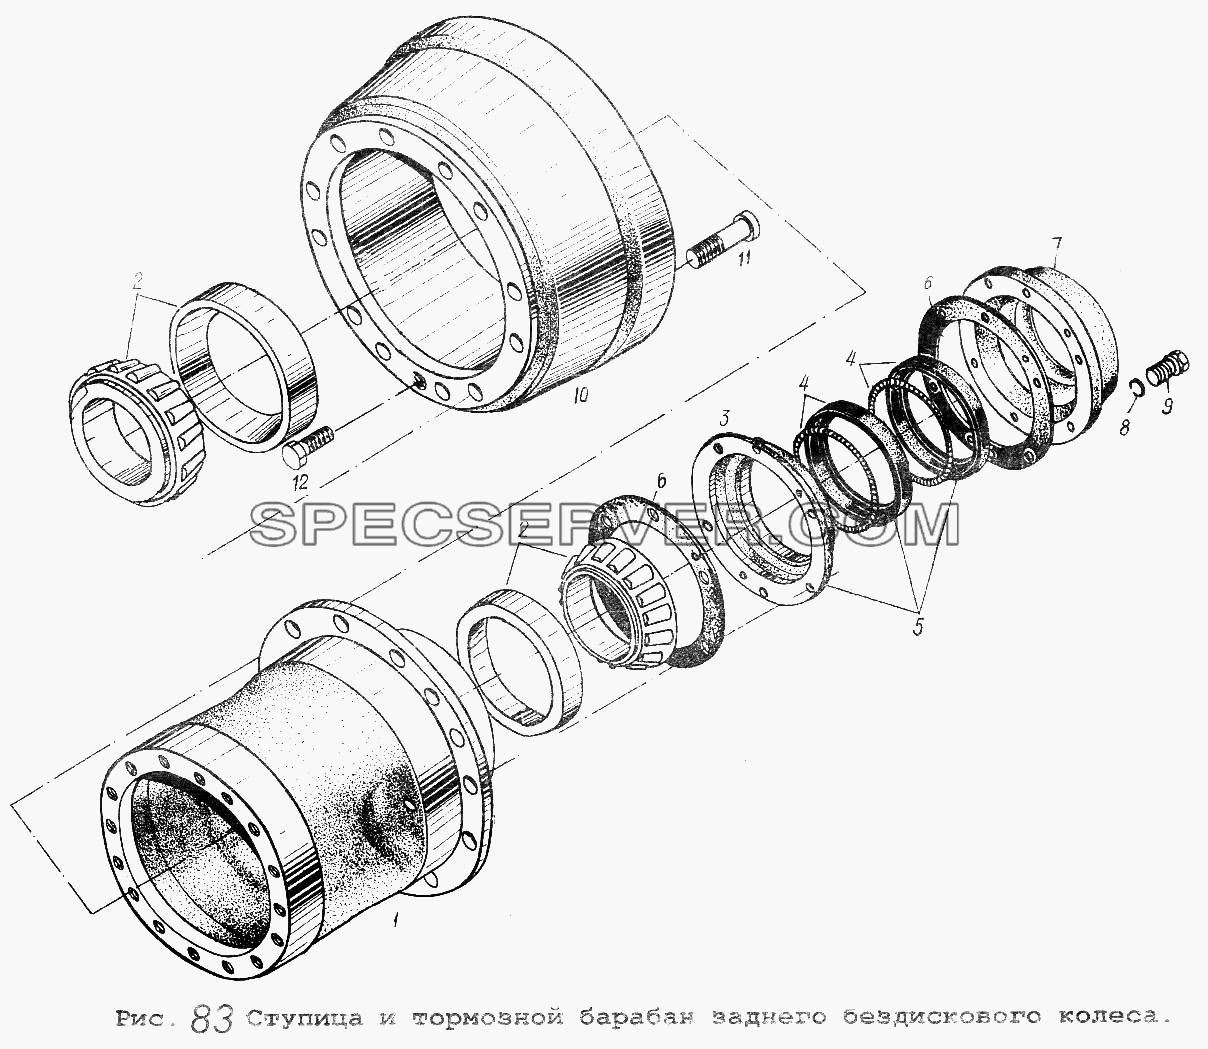 Ступица и тормозной барабан заднего бездискового колеса для МАЗ-5337 (список запасных частей)